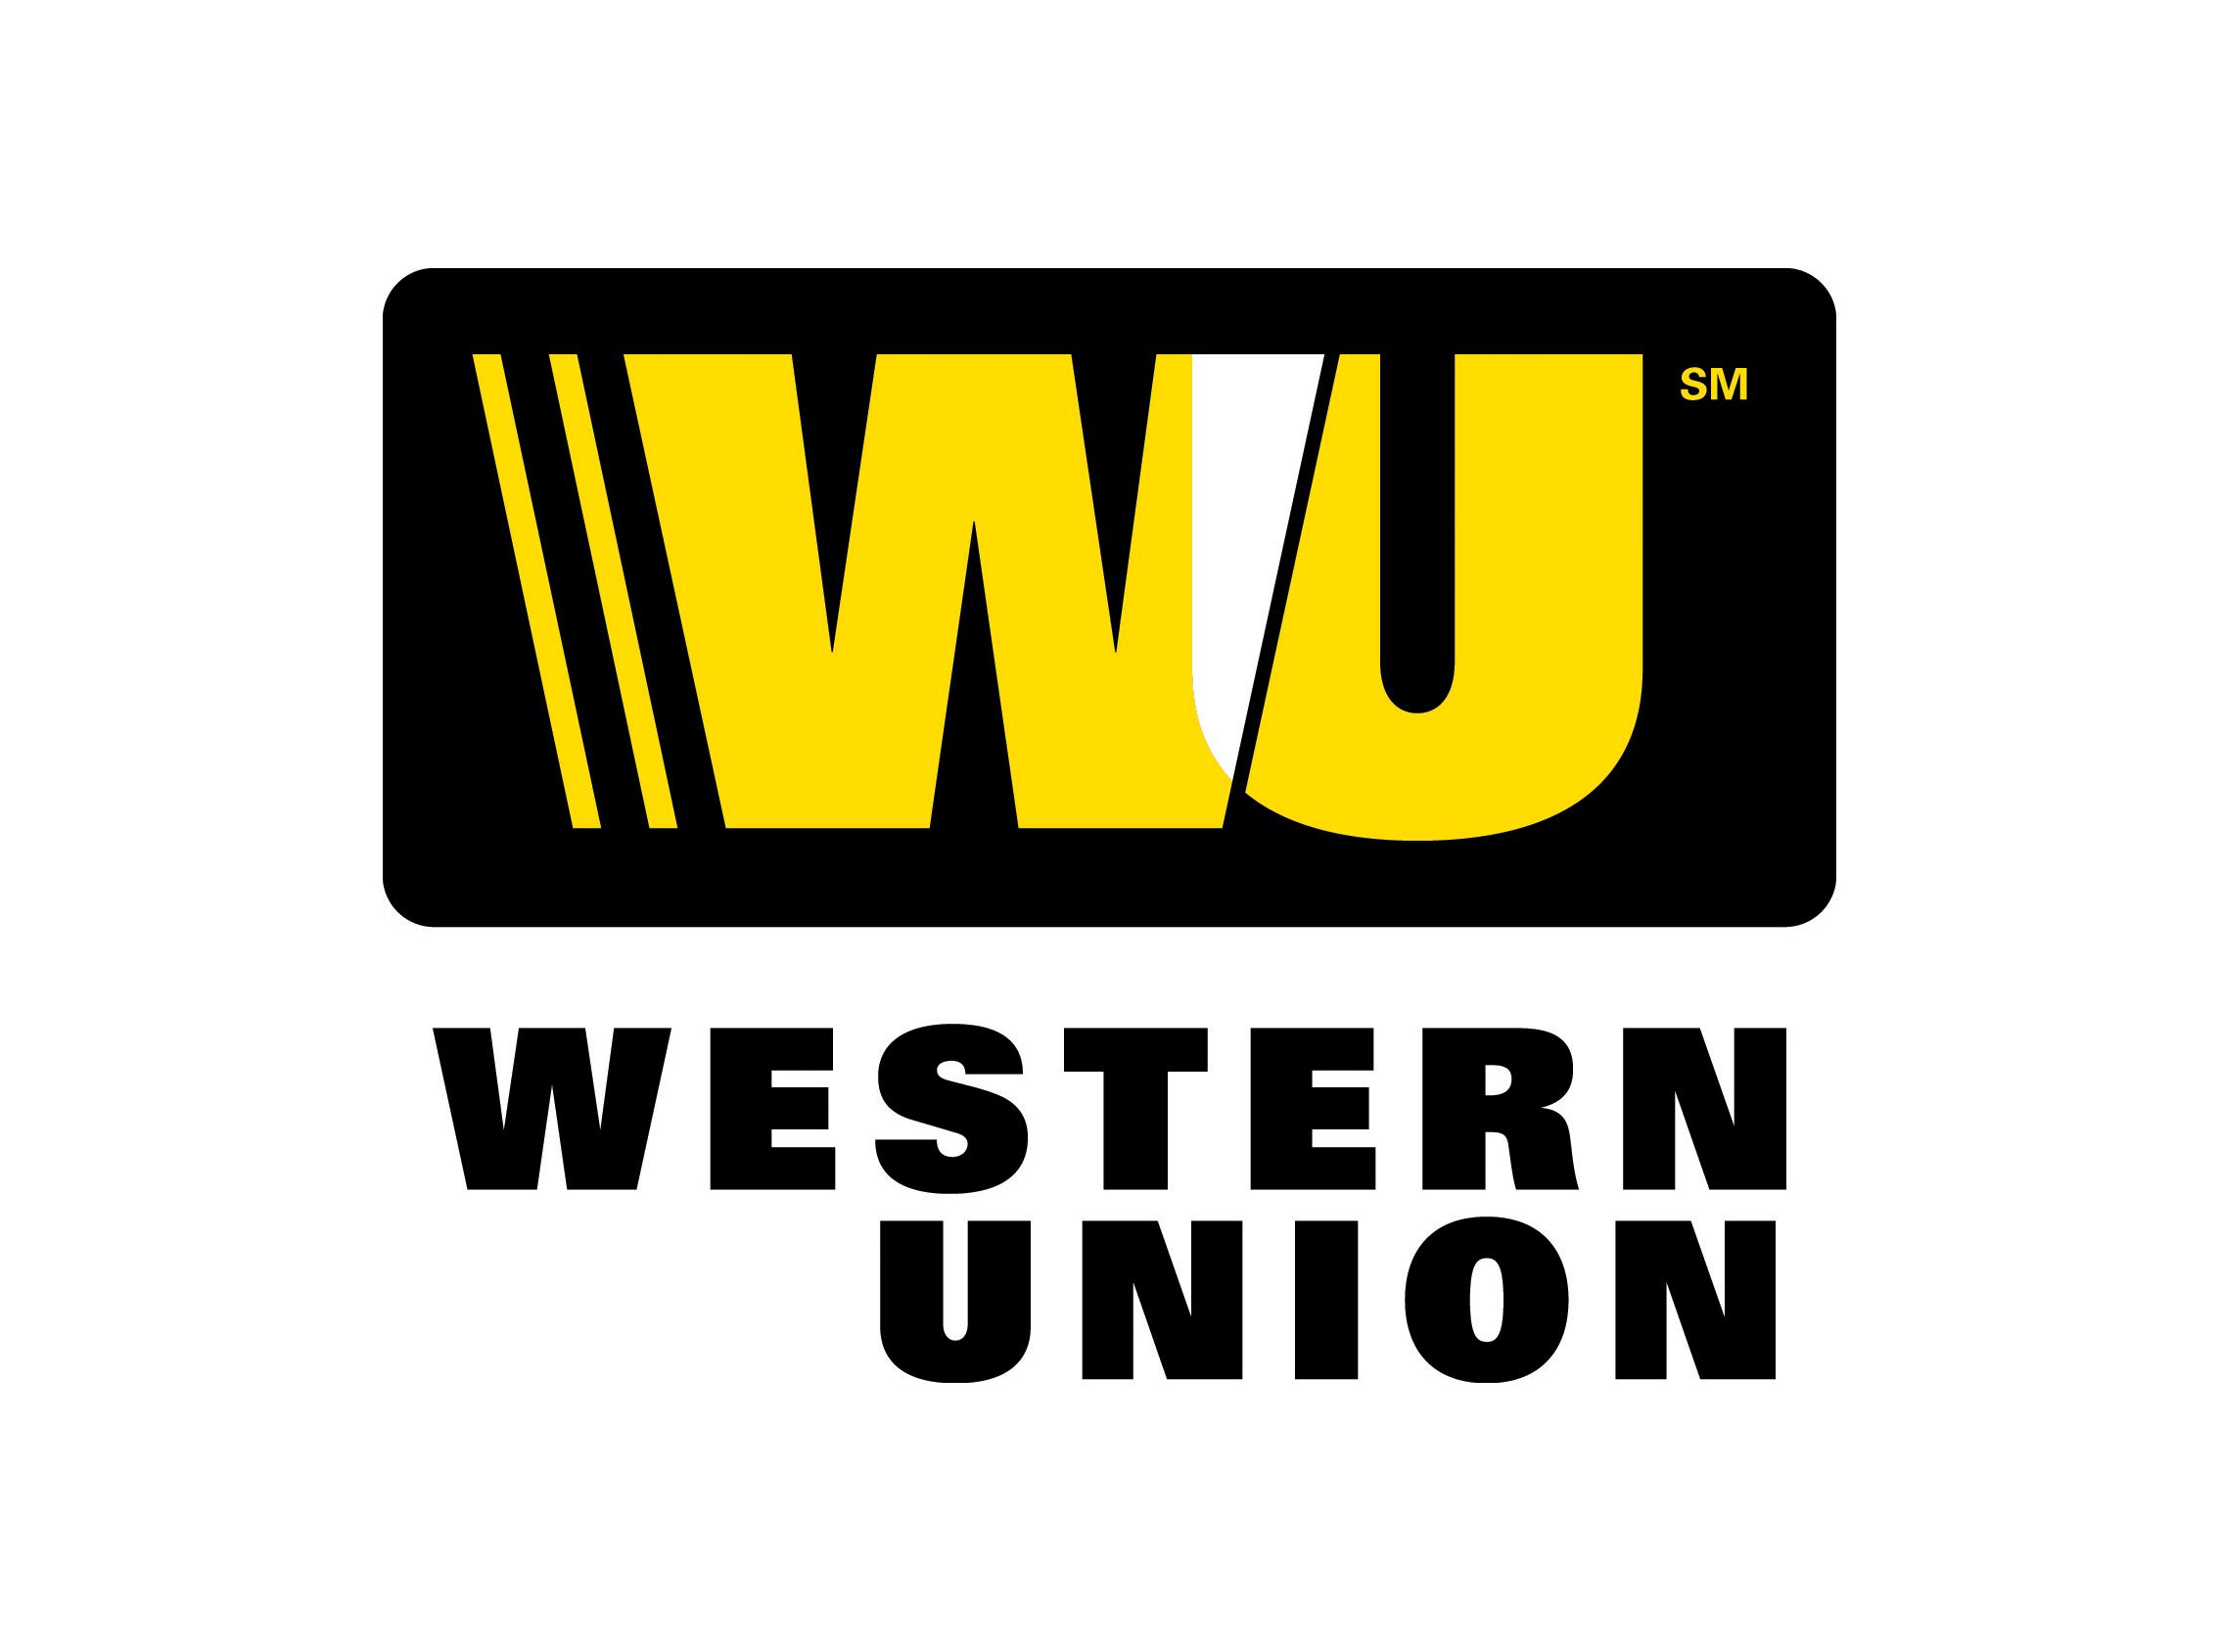 Western Union logo money tran